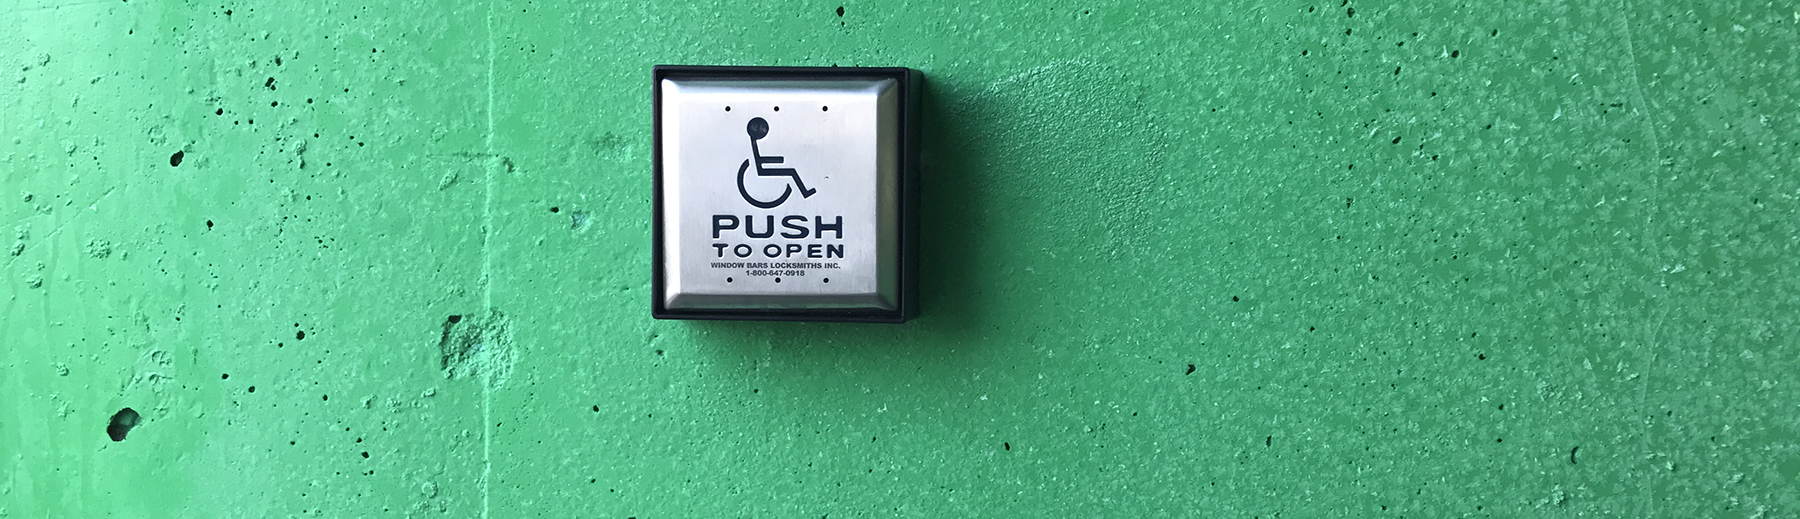 An accessible door button